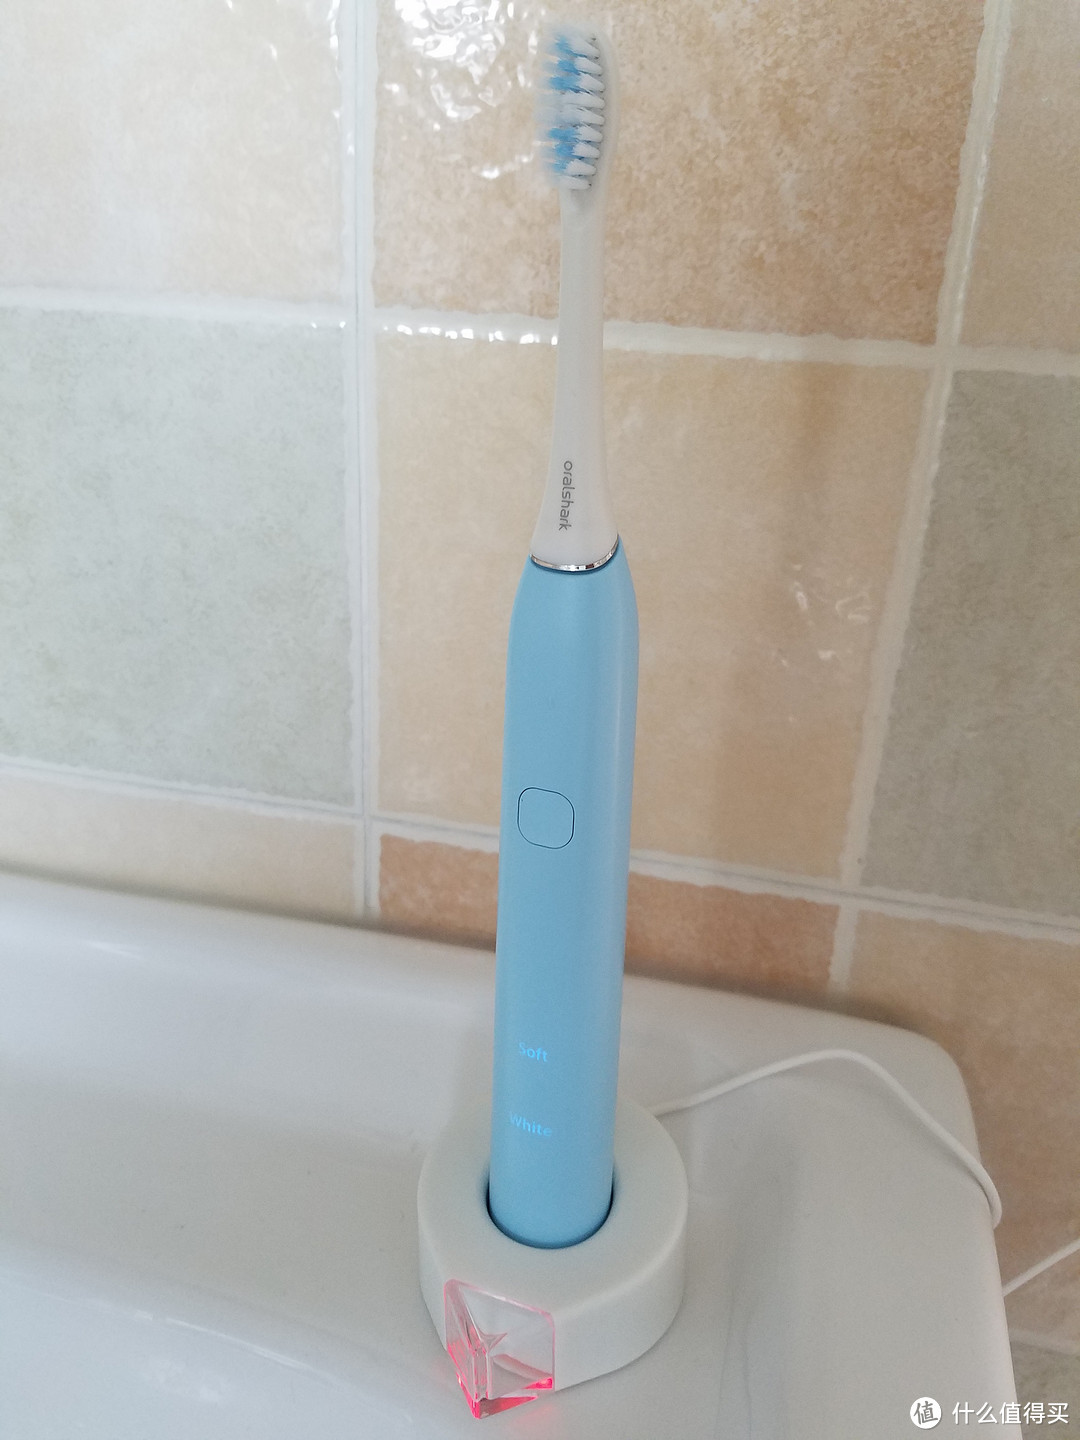 论电动牙刷对一个普通人的意义以及刷牙的正确姿势：Oralshark 智能电动牙刷 体验